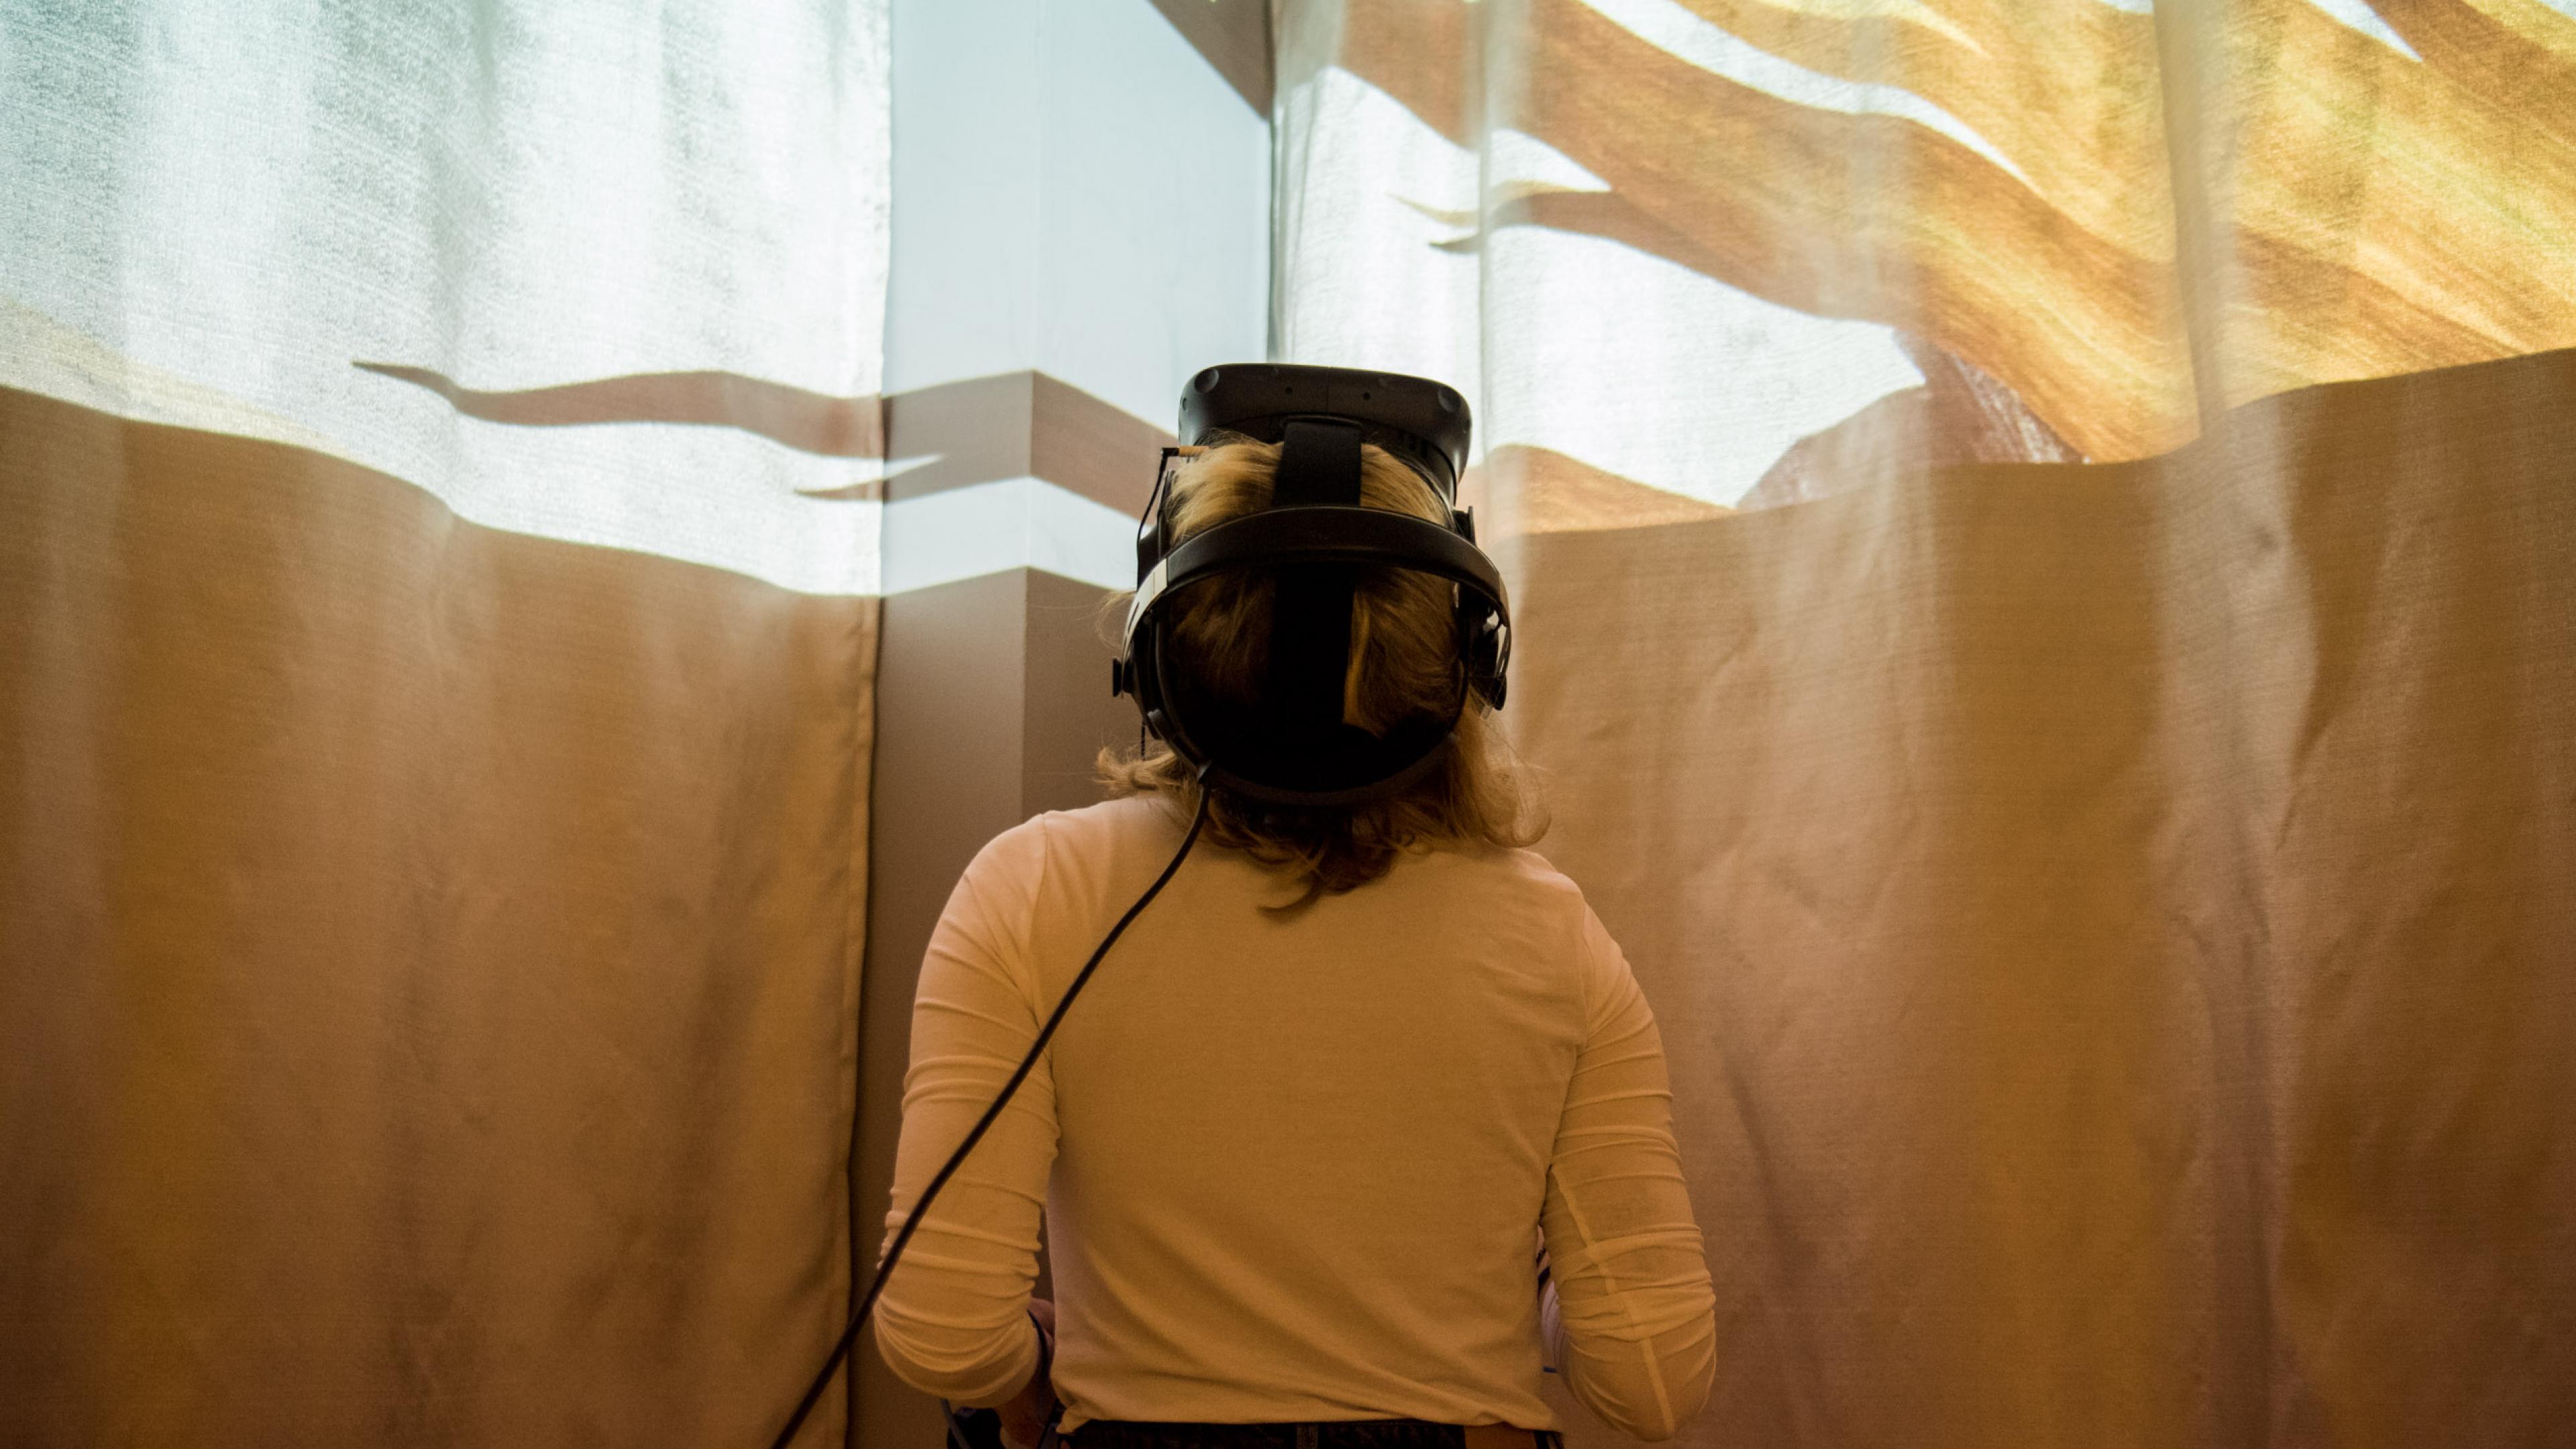 Ein weibliche Person mit VR-Brille legt ihren Kopf in den Nacken, oben im Bild erscheint eine Lichtinstallation.